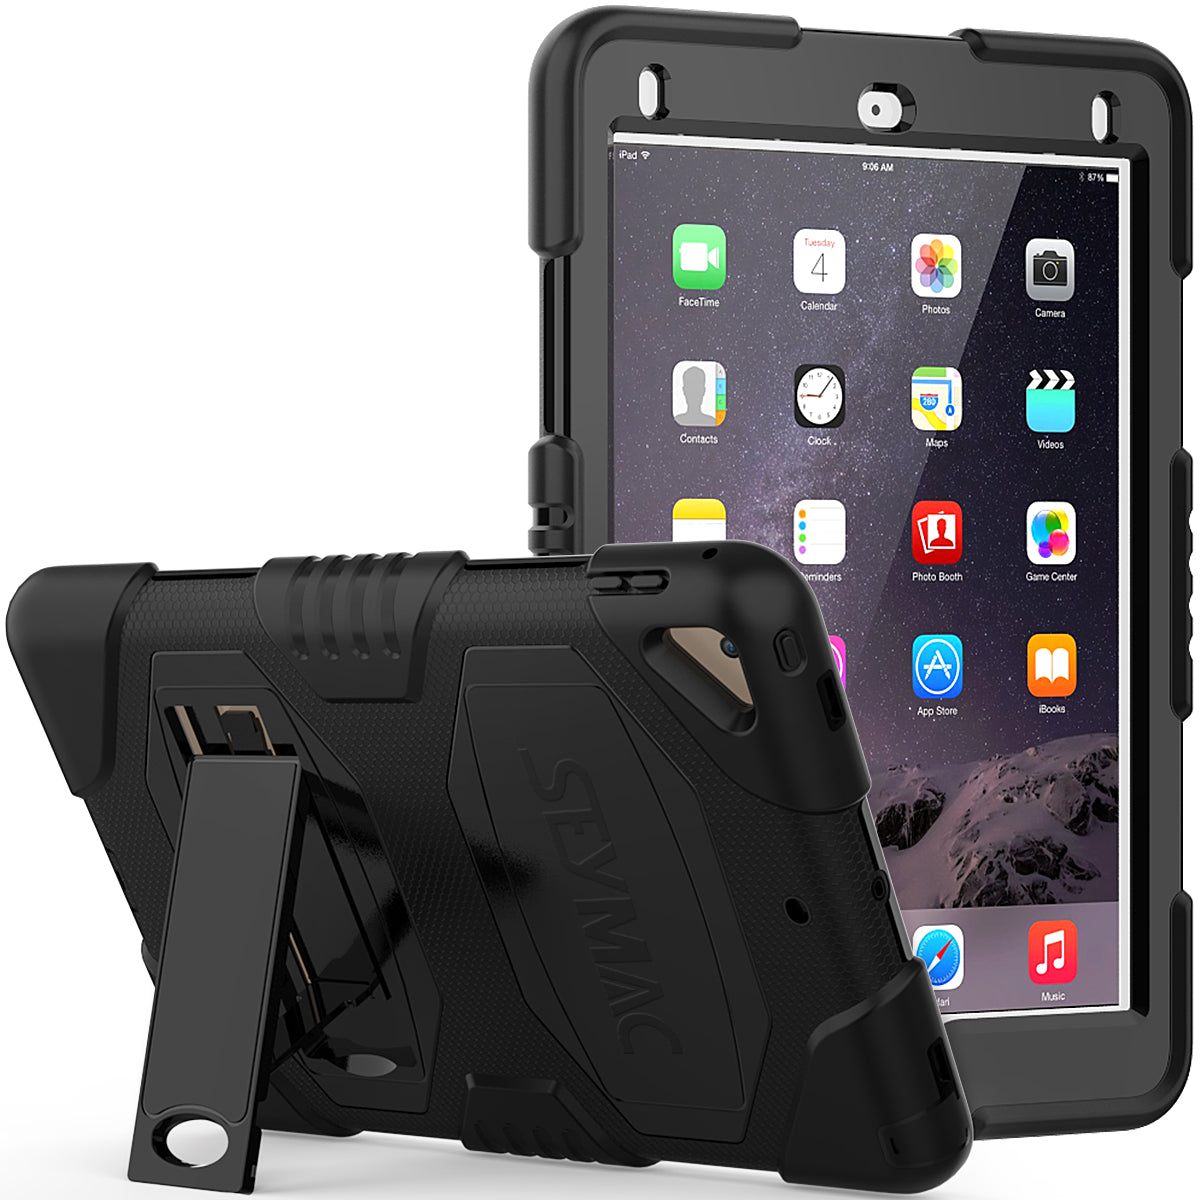 iPad Rugged Case for Apple iPad 5, iPad 6 & iPad Air 2 (9.7 inch)